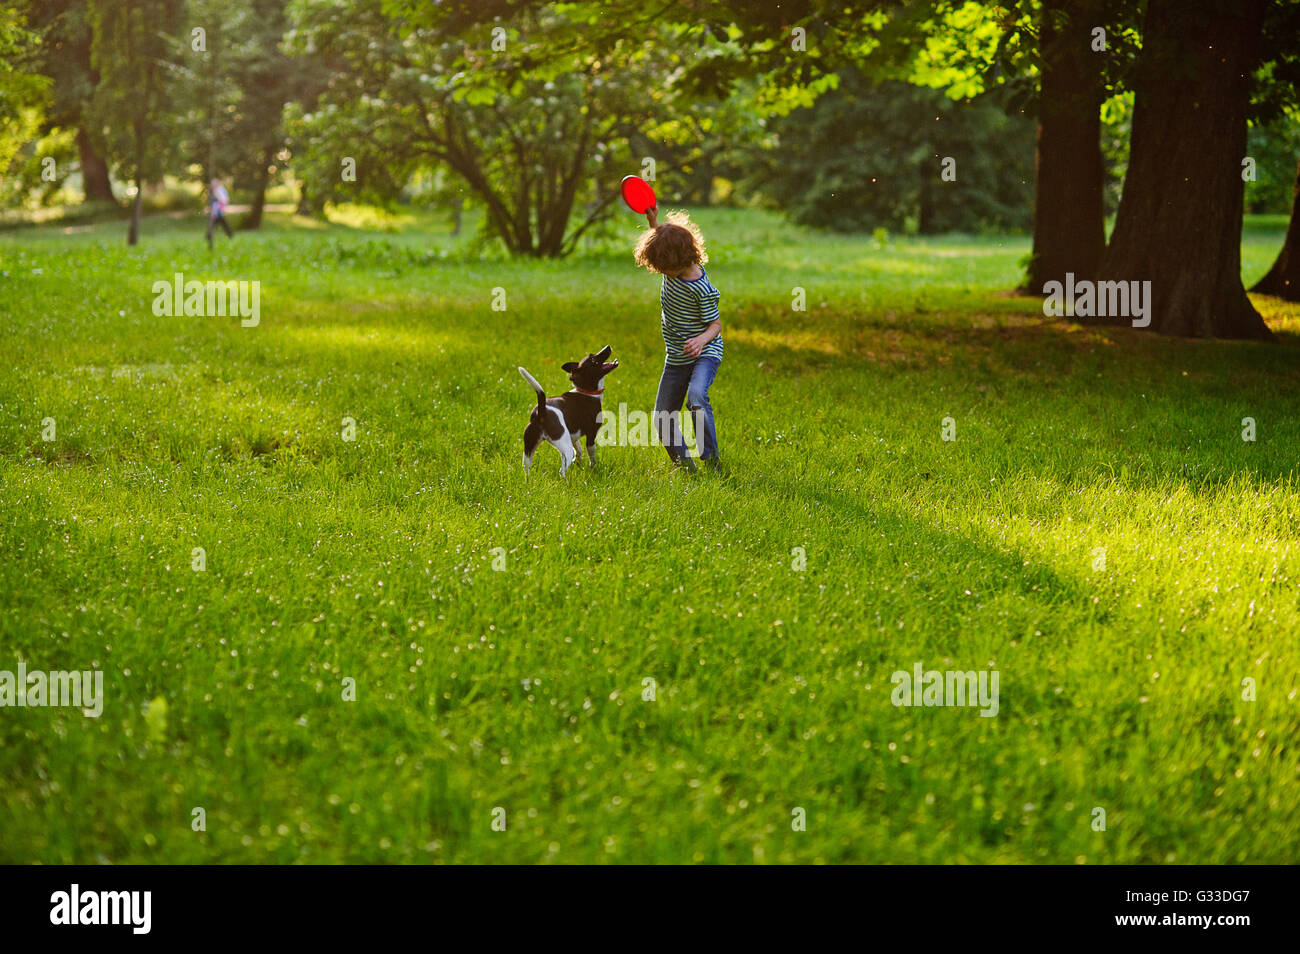 Die geschweiften Kerlchen trainiert Doggy auf dem Rasen im Park. Junge hält einen Frisbee. Sein Haustier schaut aufmerksam der Besitzer. Stockfoto